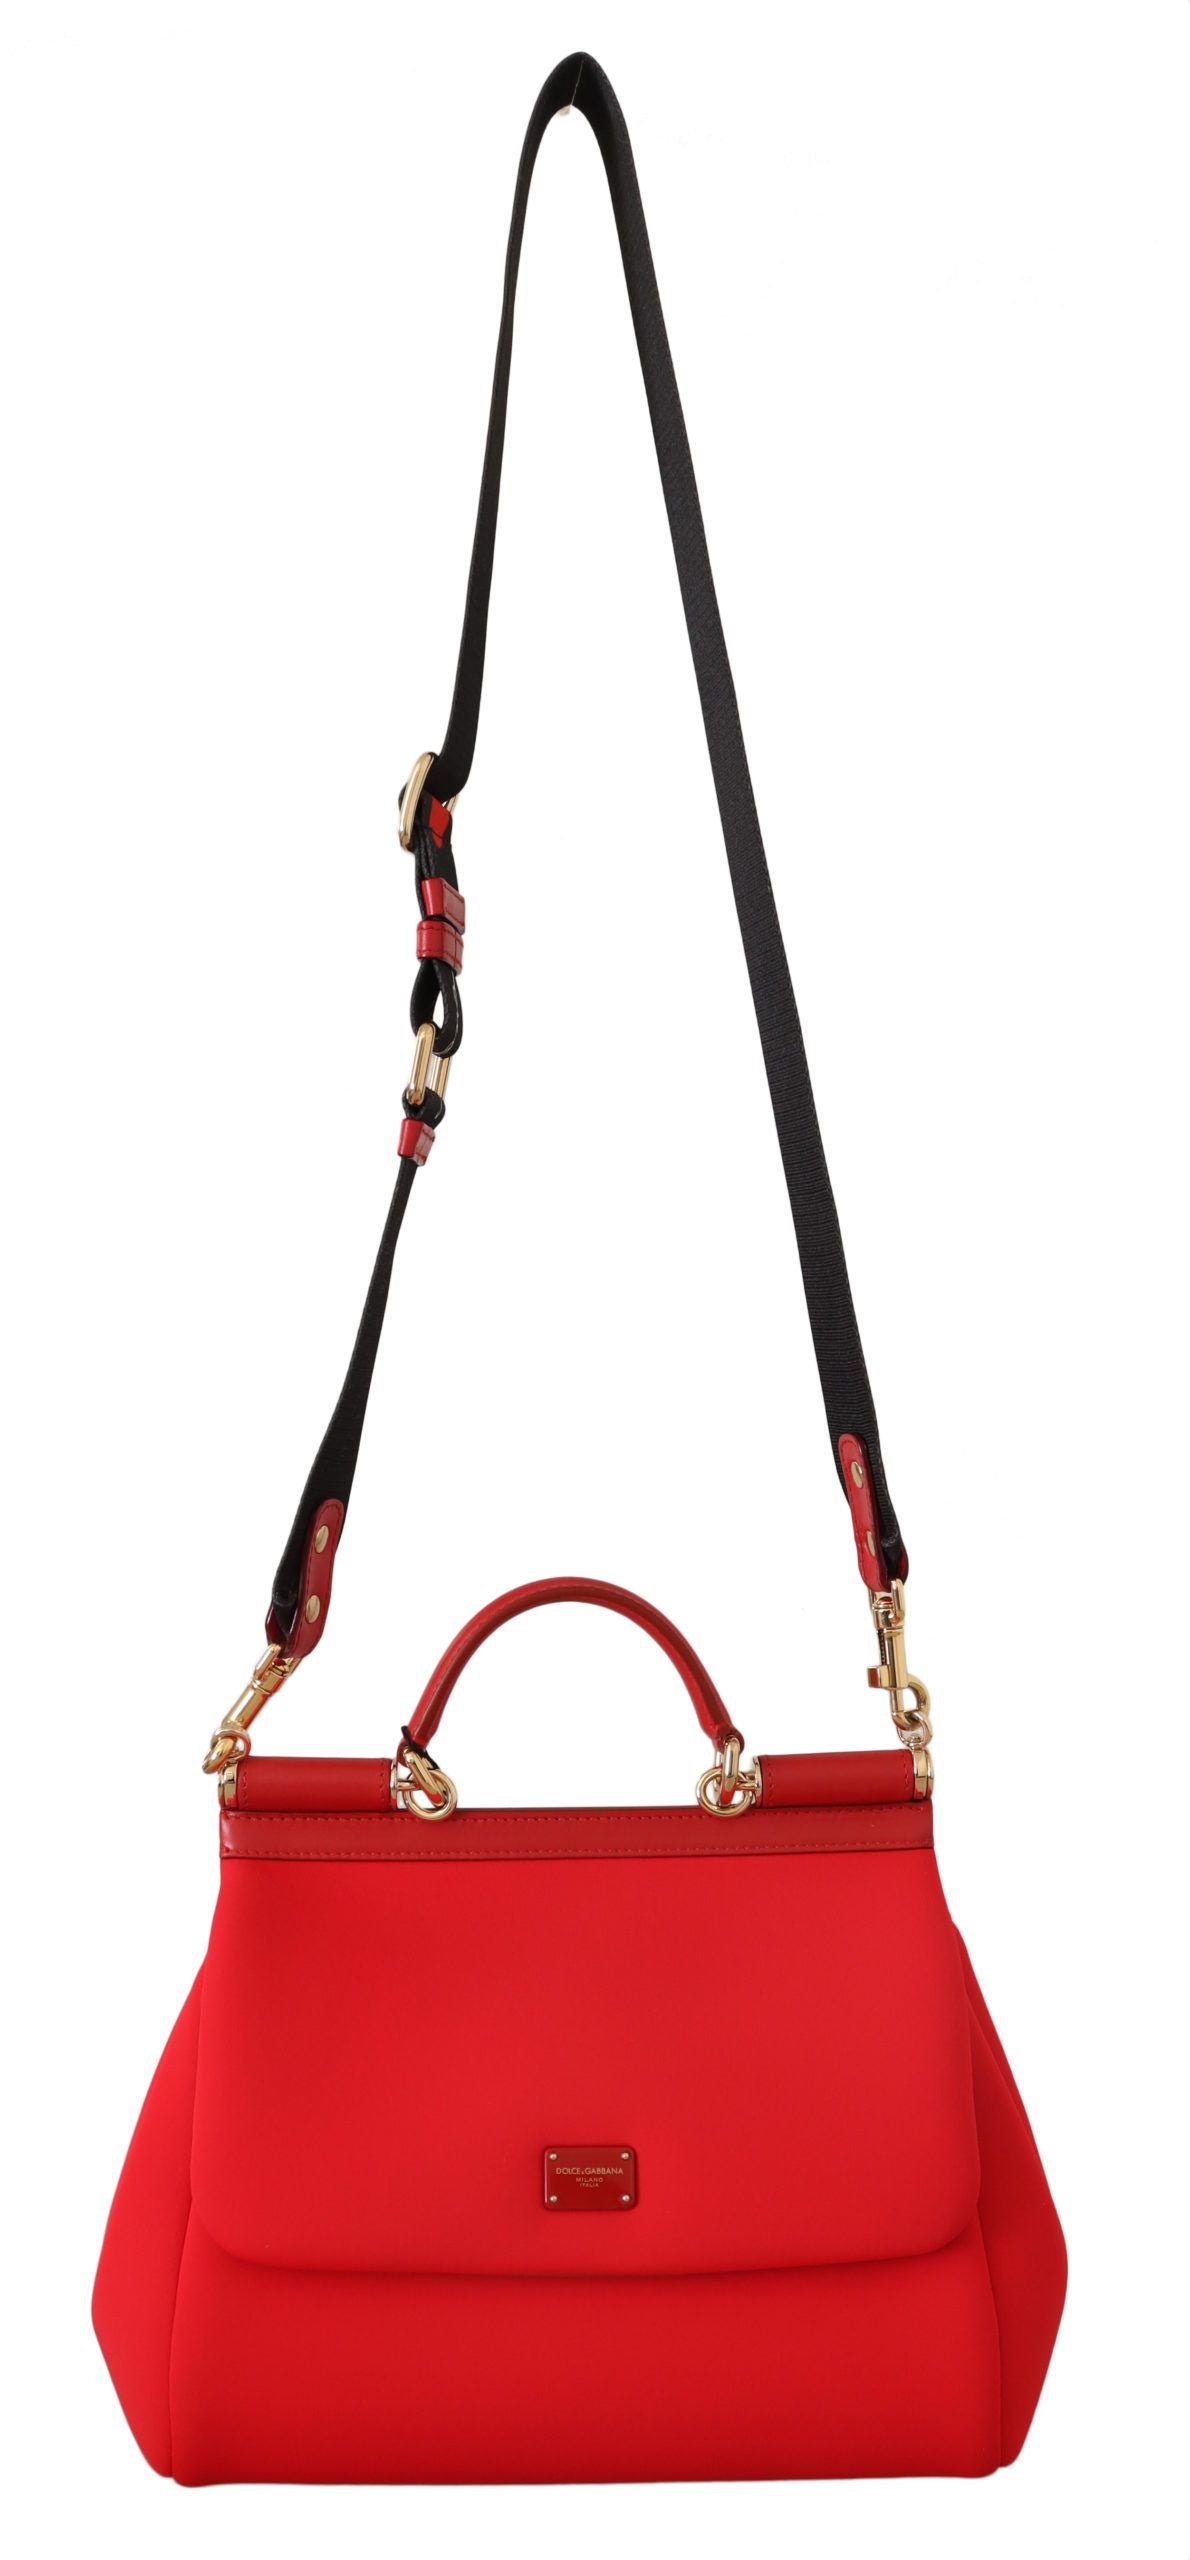 Radiant Red Medium Sicily Handbag